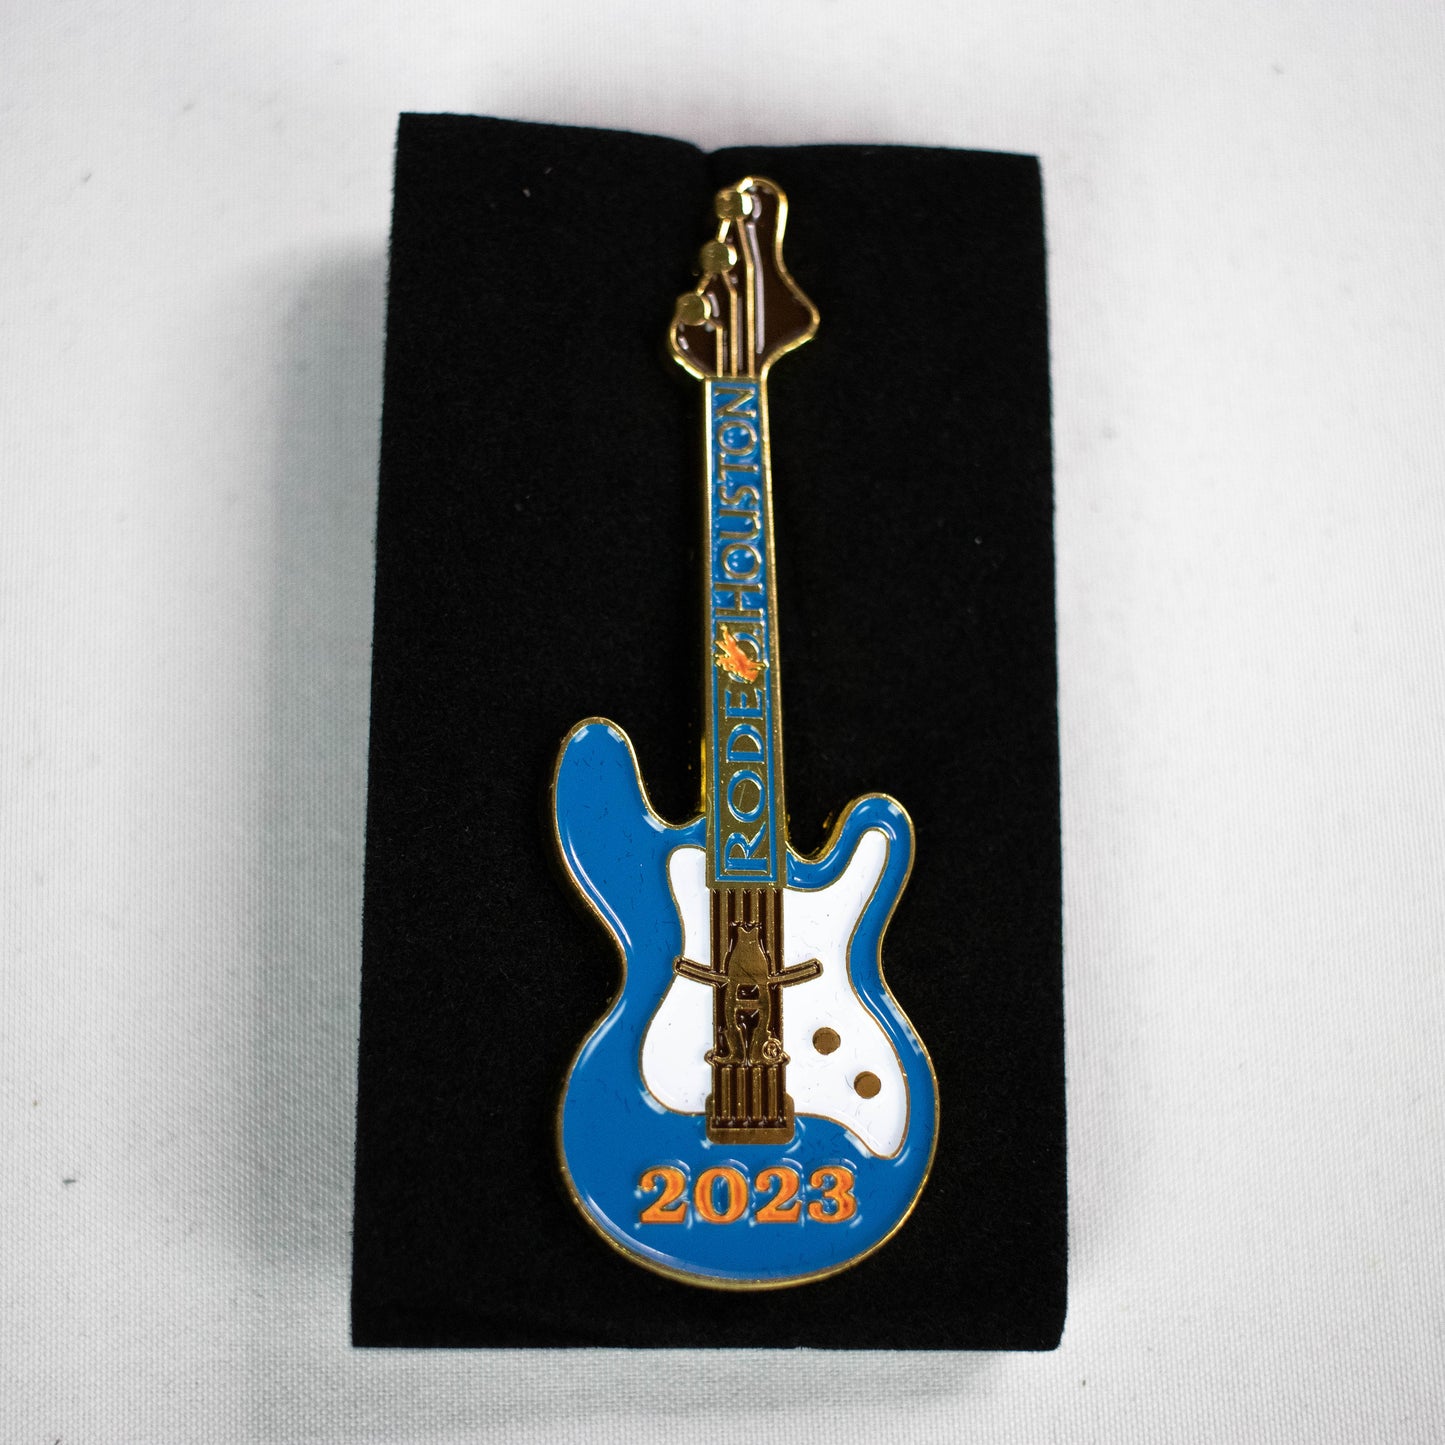 2023 Guitar Pin